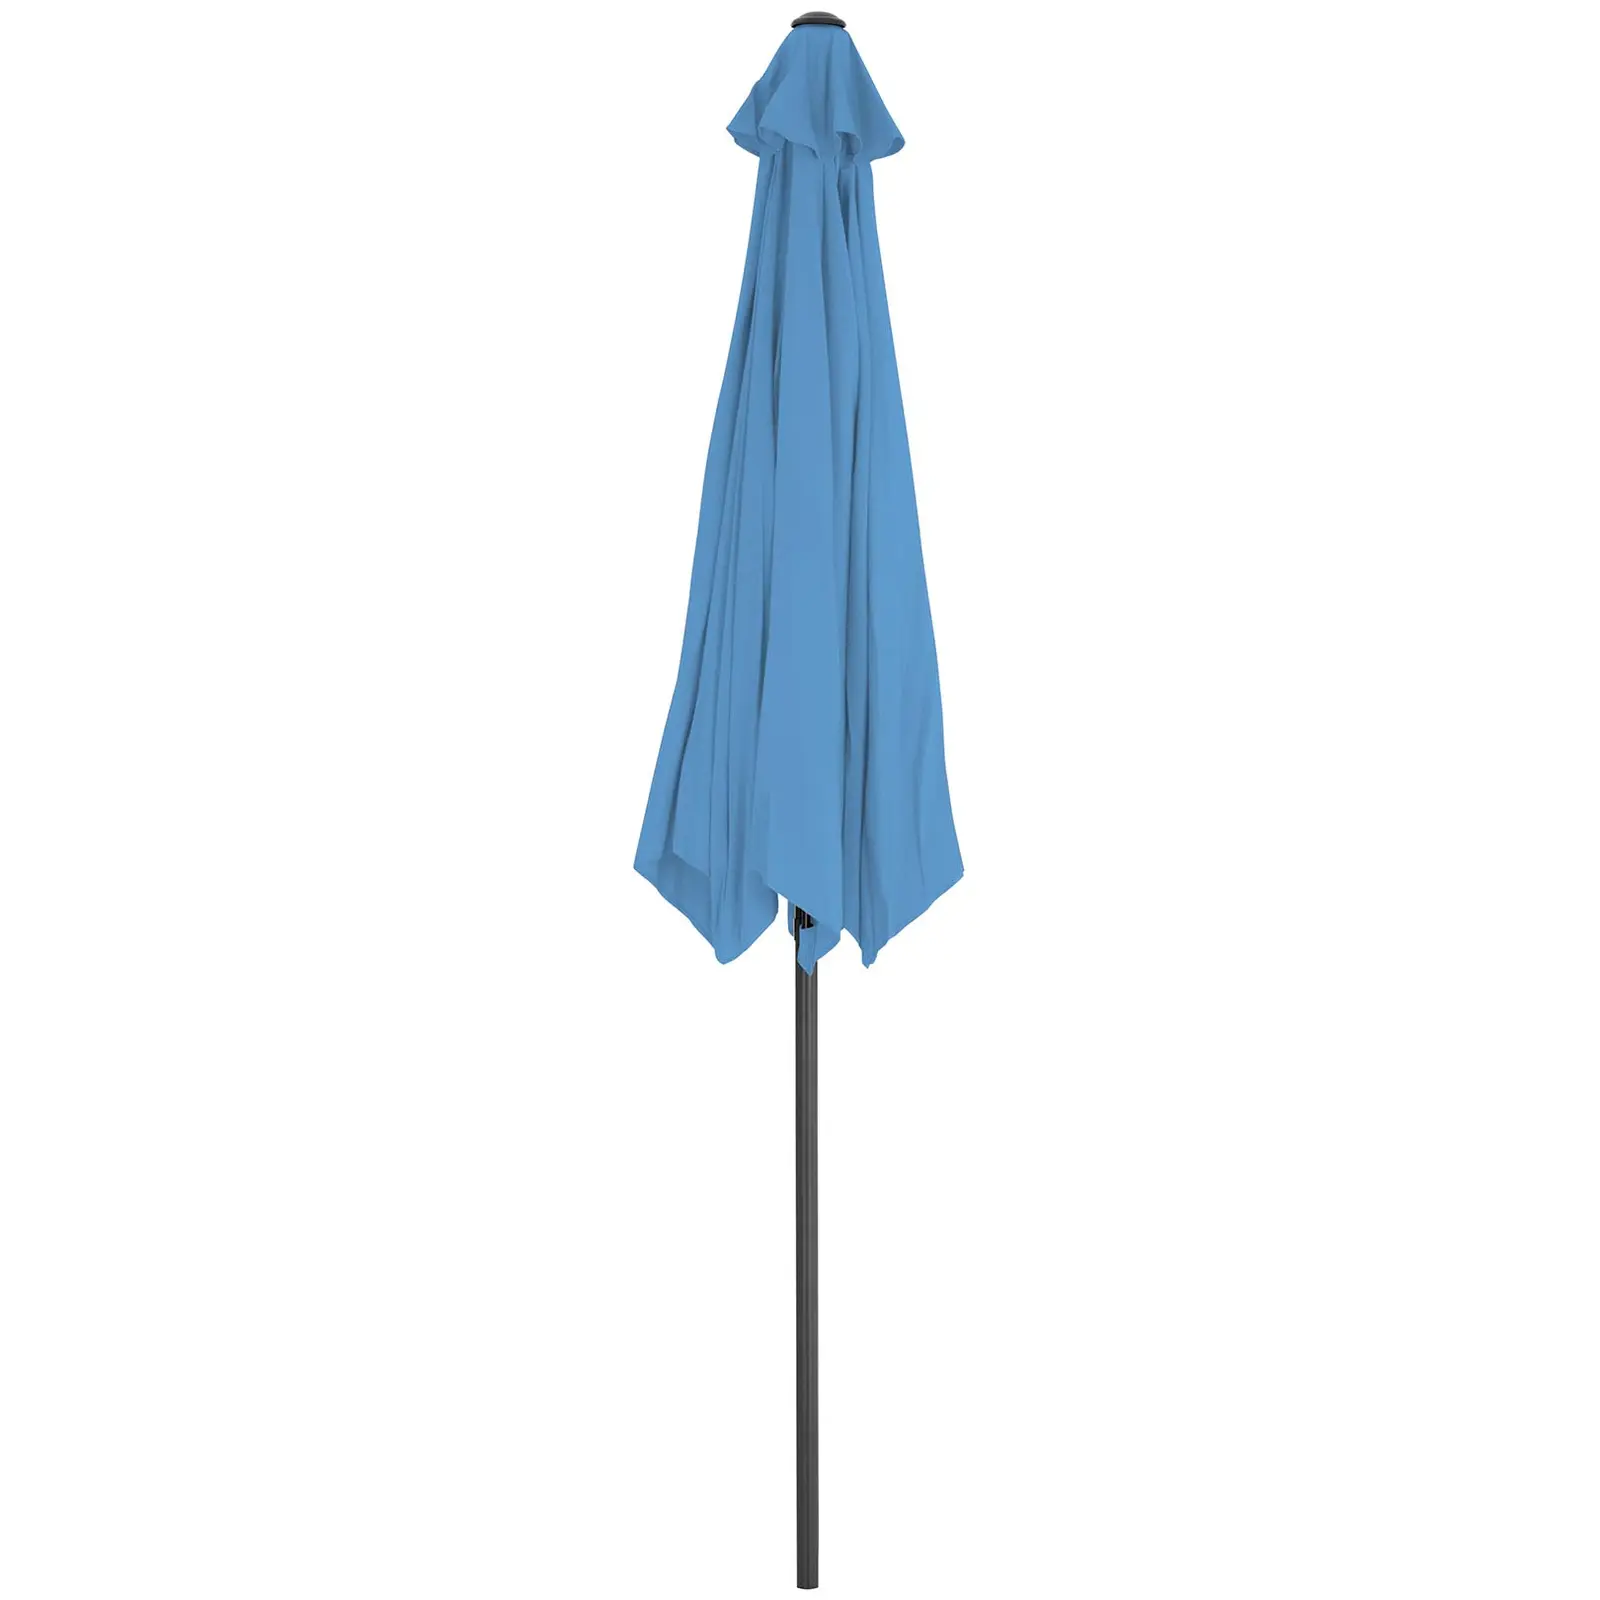 Veliki vrtni dežnik - modri - šesterokotni - Ø 300 cm - nagibni